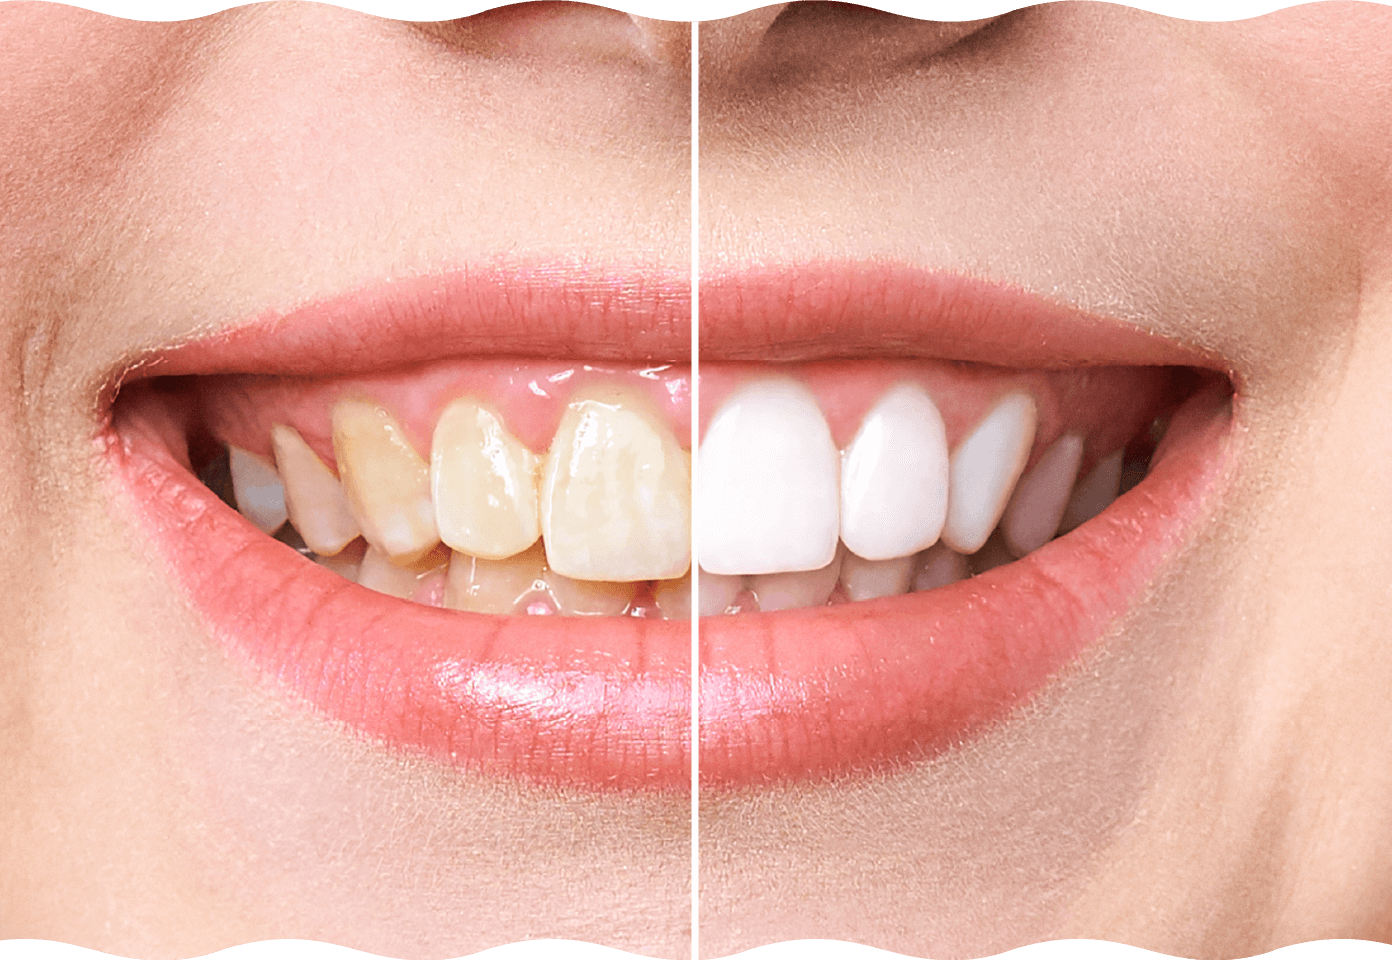 歯の色の変化を確認